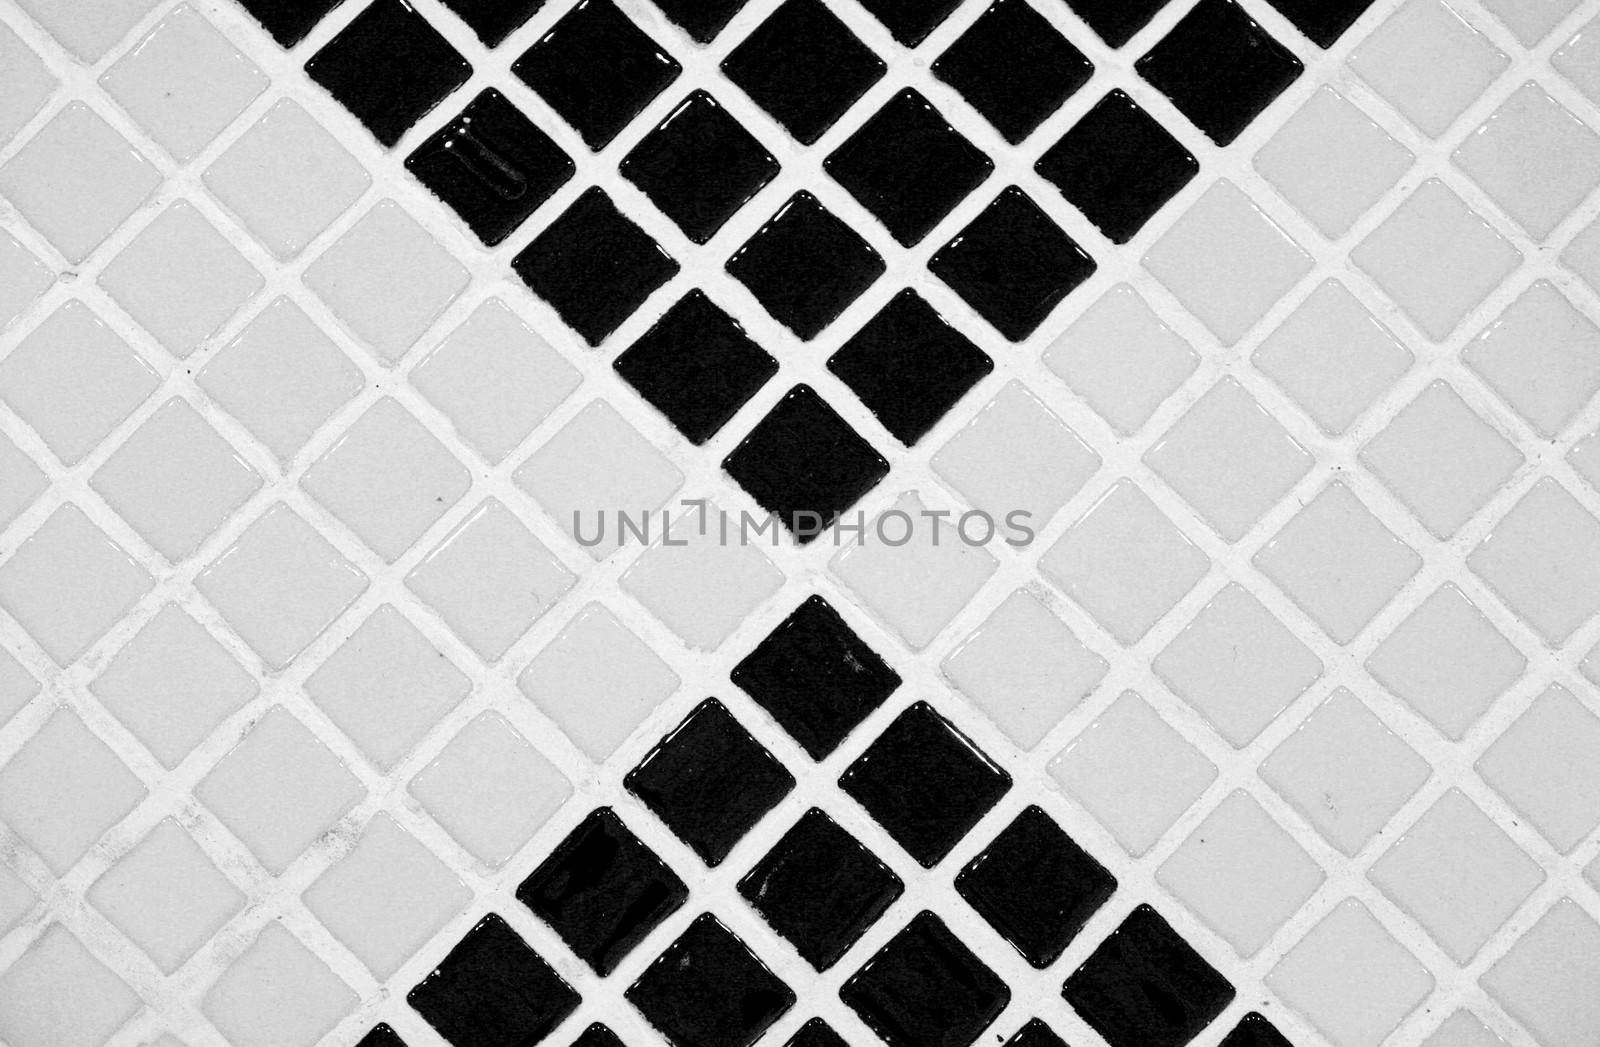  Bathroom tile graphic detail texture